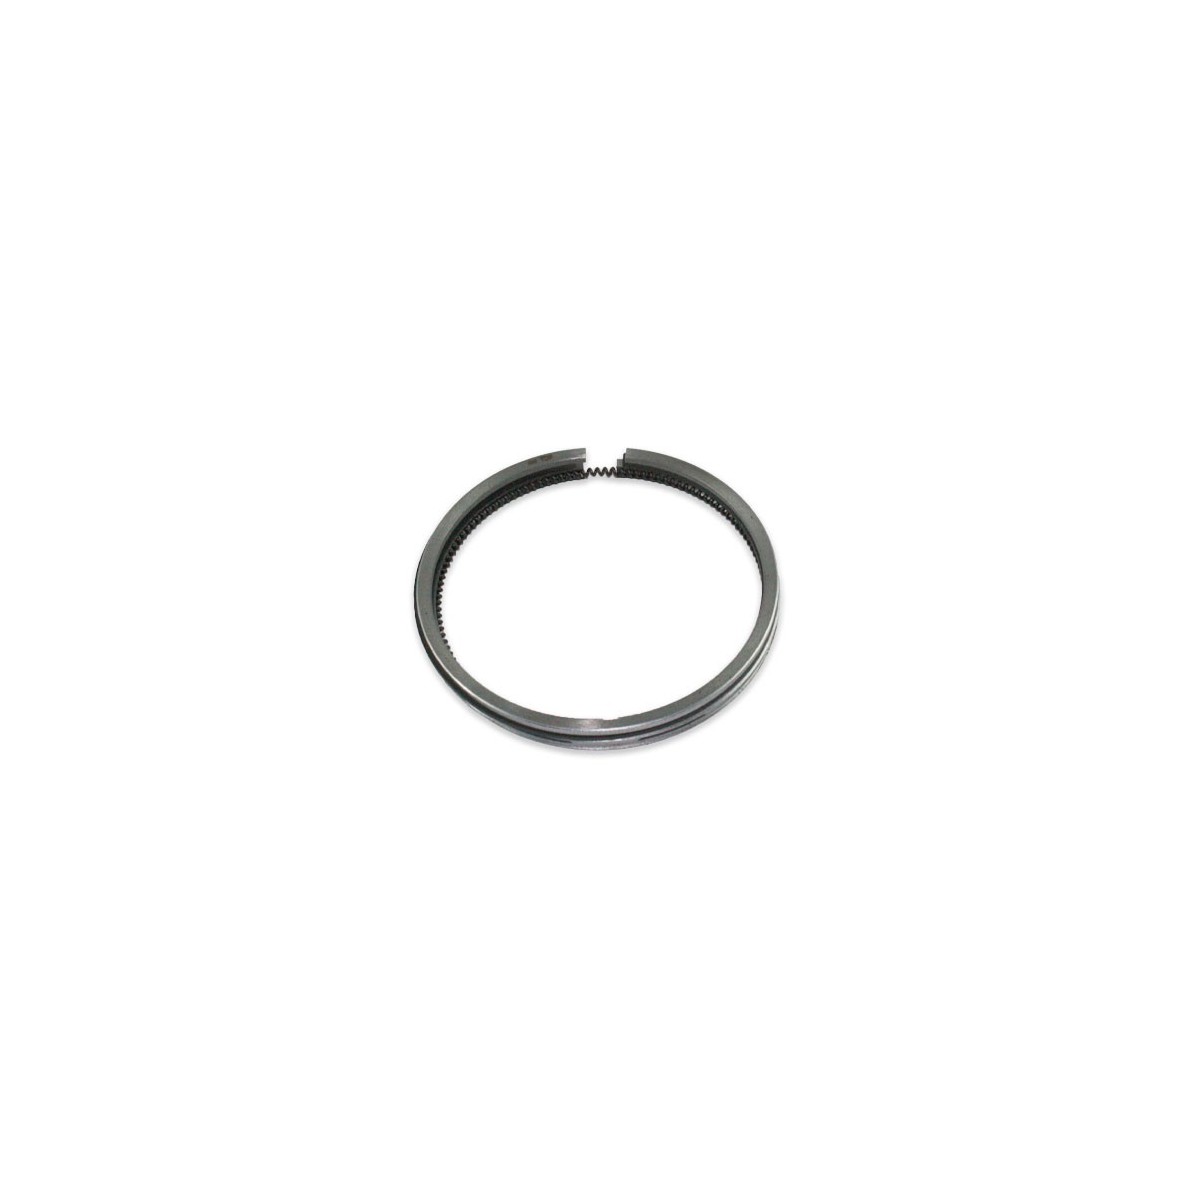 Ein Satz Ringe für den Kubota D950 B1702 Kolben 75mm